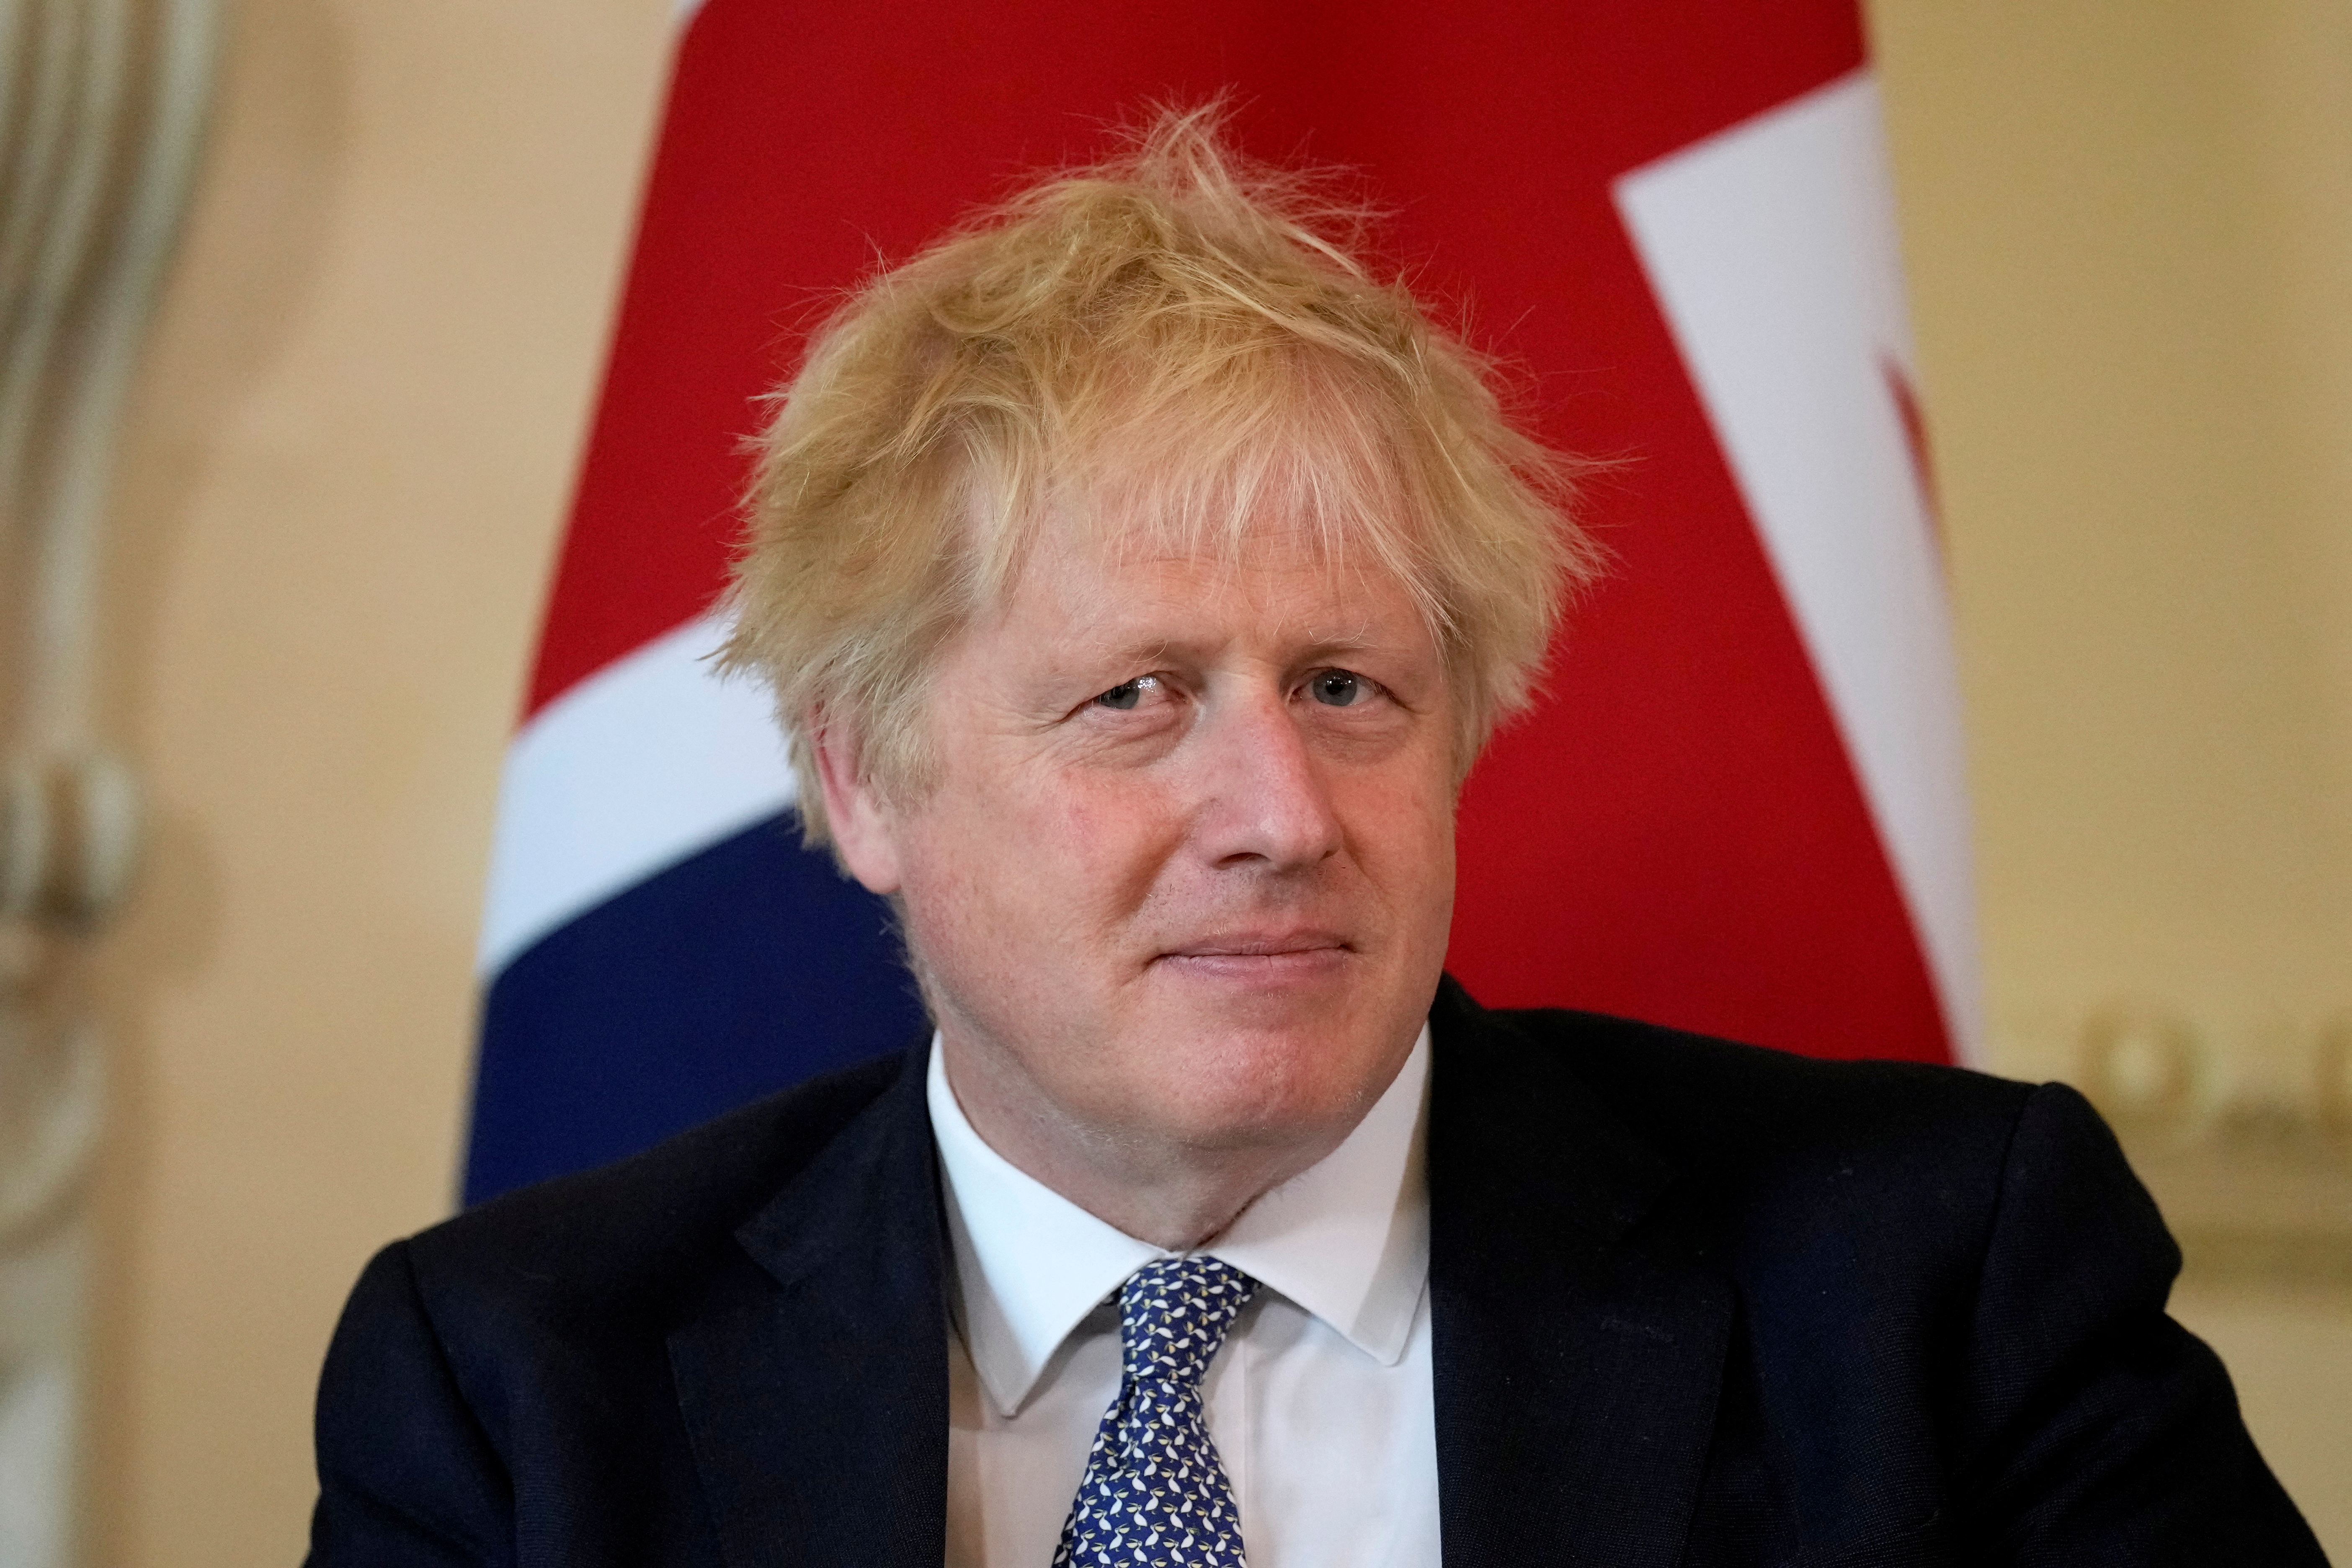 Día clave para Boris Johnson: hoy se conoce el informe del Partygate y se espera su declaración ante el Parlamento